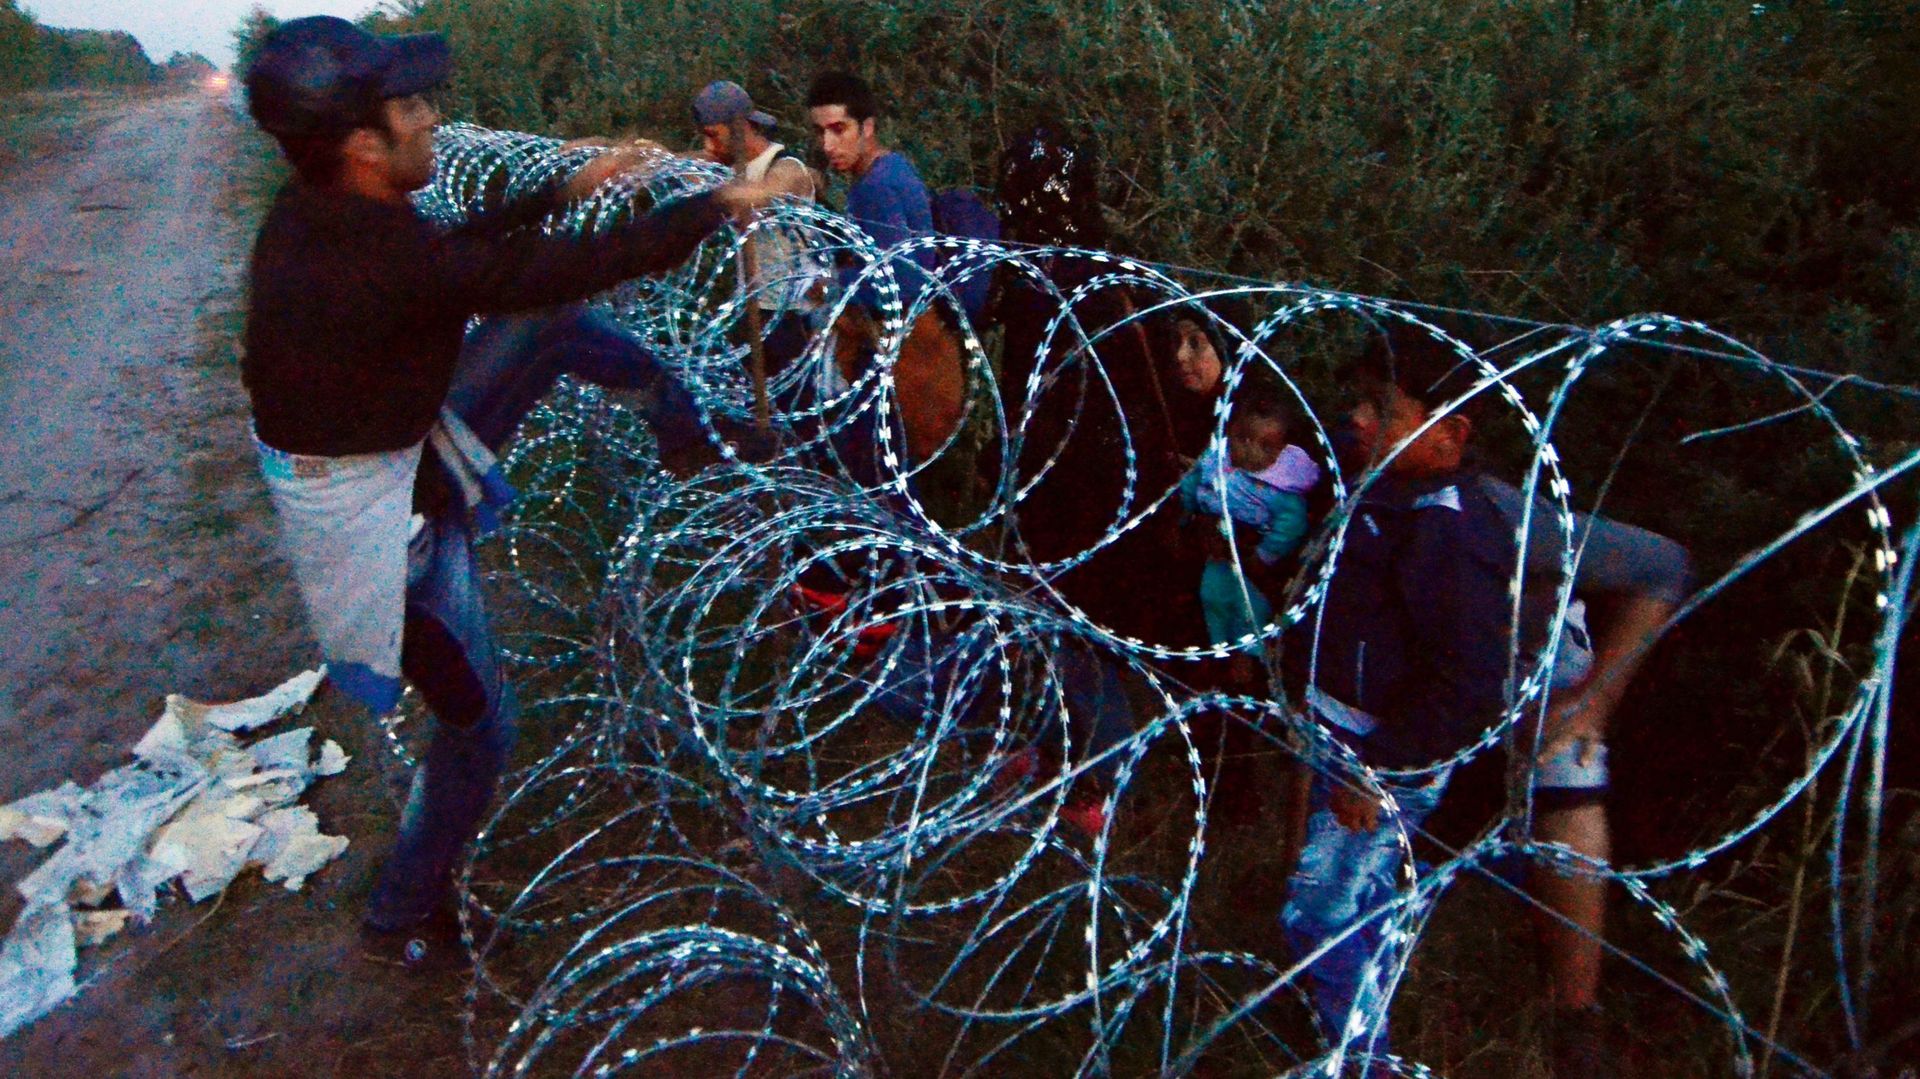 Réfugiés: le mur hongrois crée la polémique, mais est-il illégal?